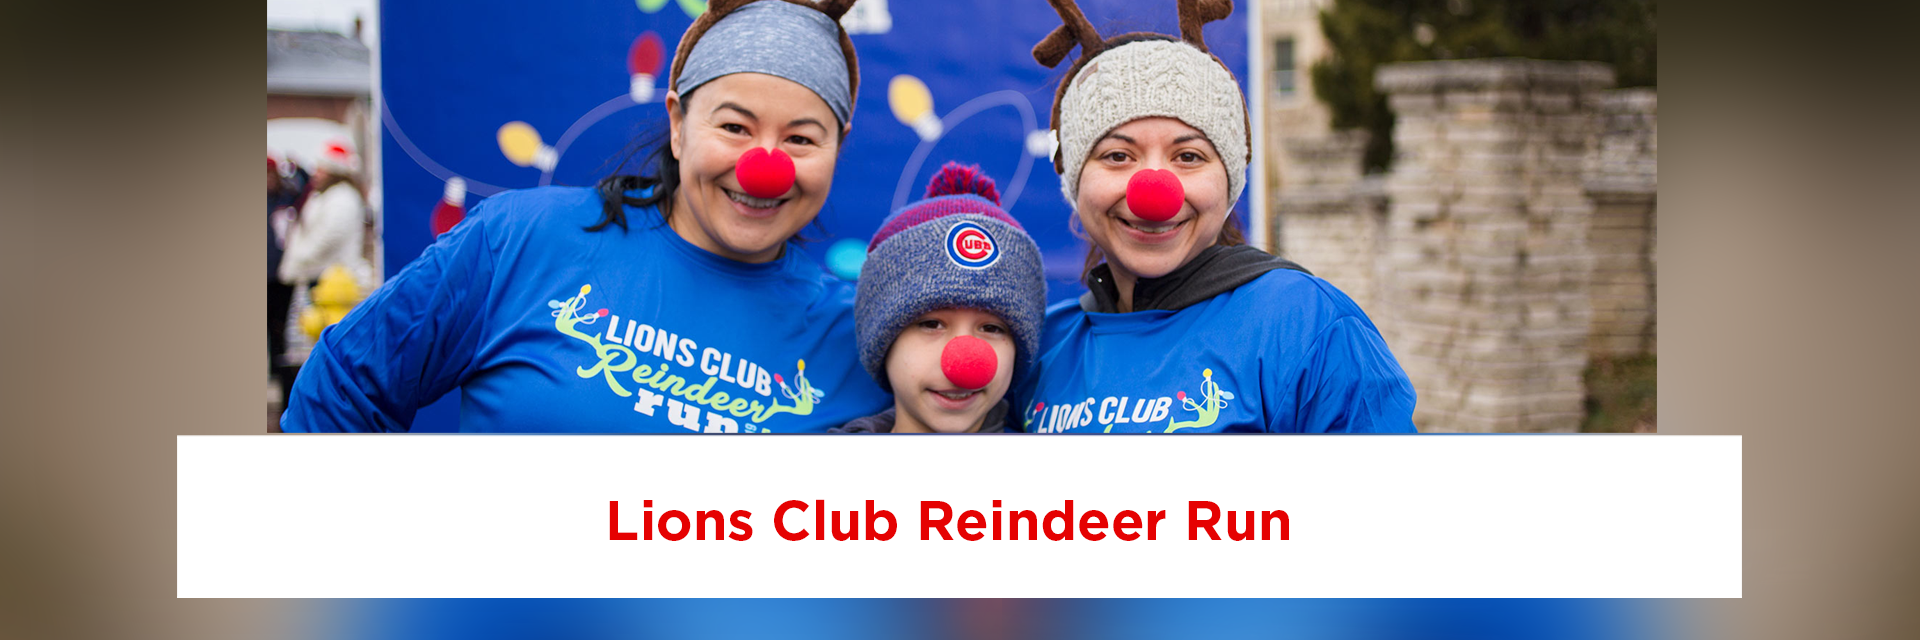 Reindeer Run-Lions Club